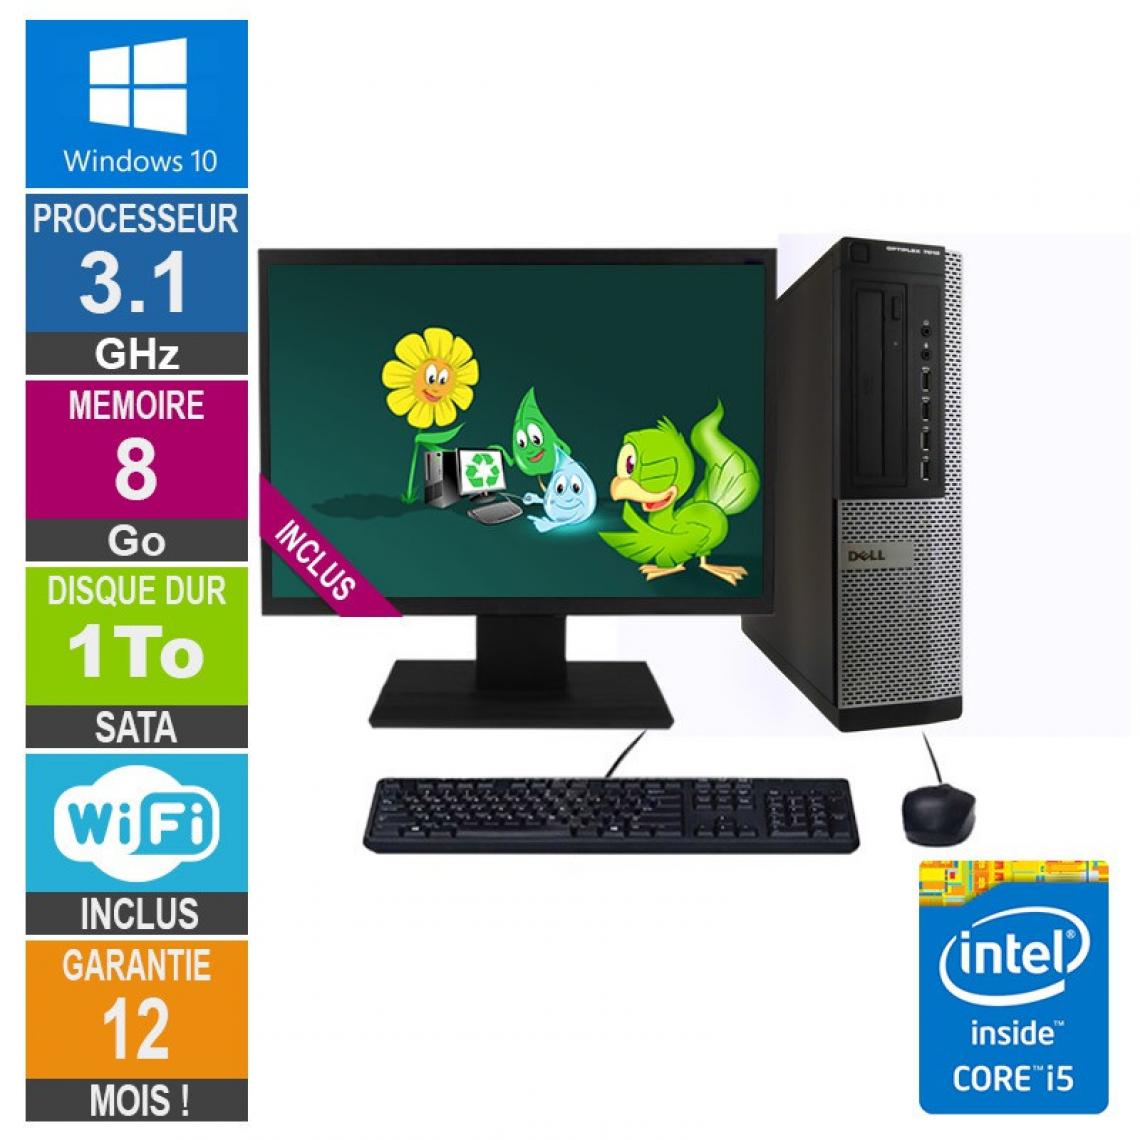 Dell - PC Dell Optiplex 7010 DT Core i5-2400 3.10GHz 8Go/1To Wifi W10 + Ecran 19 - PC Fixe